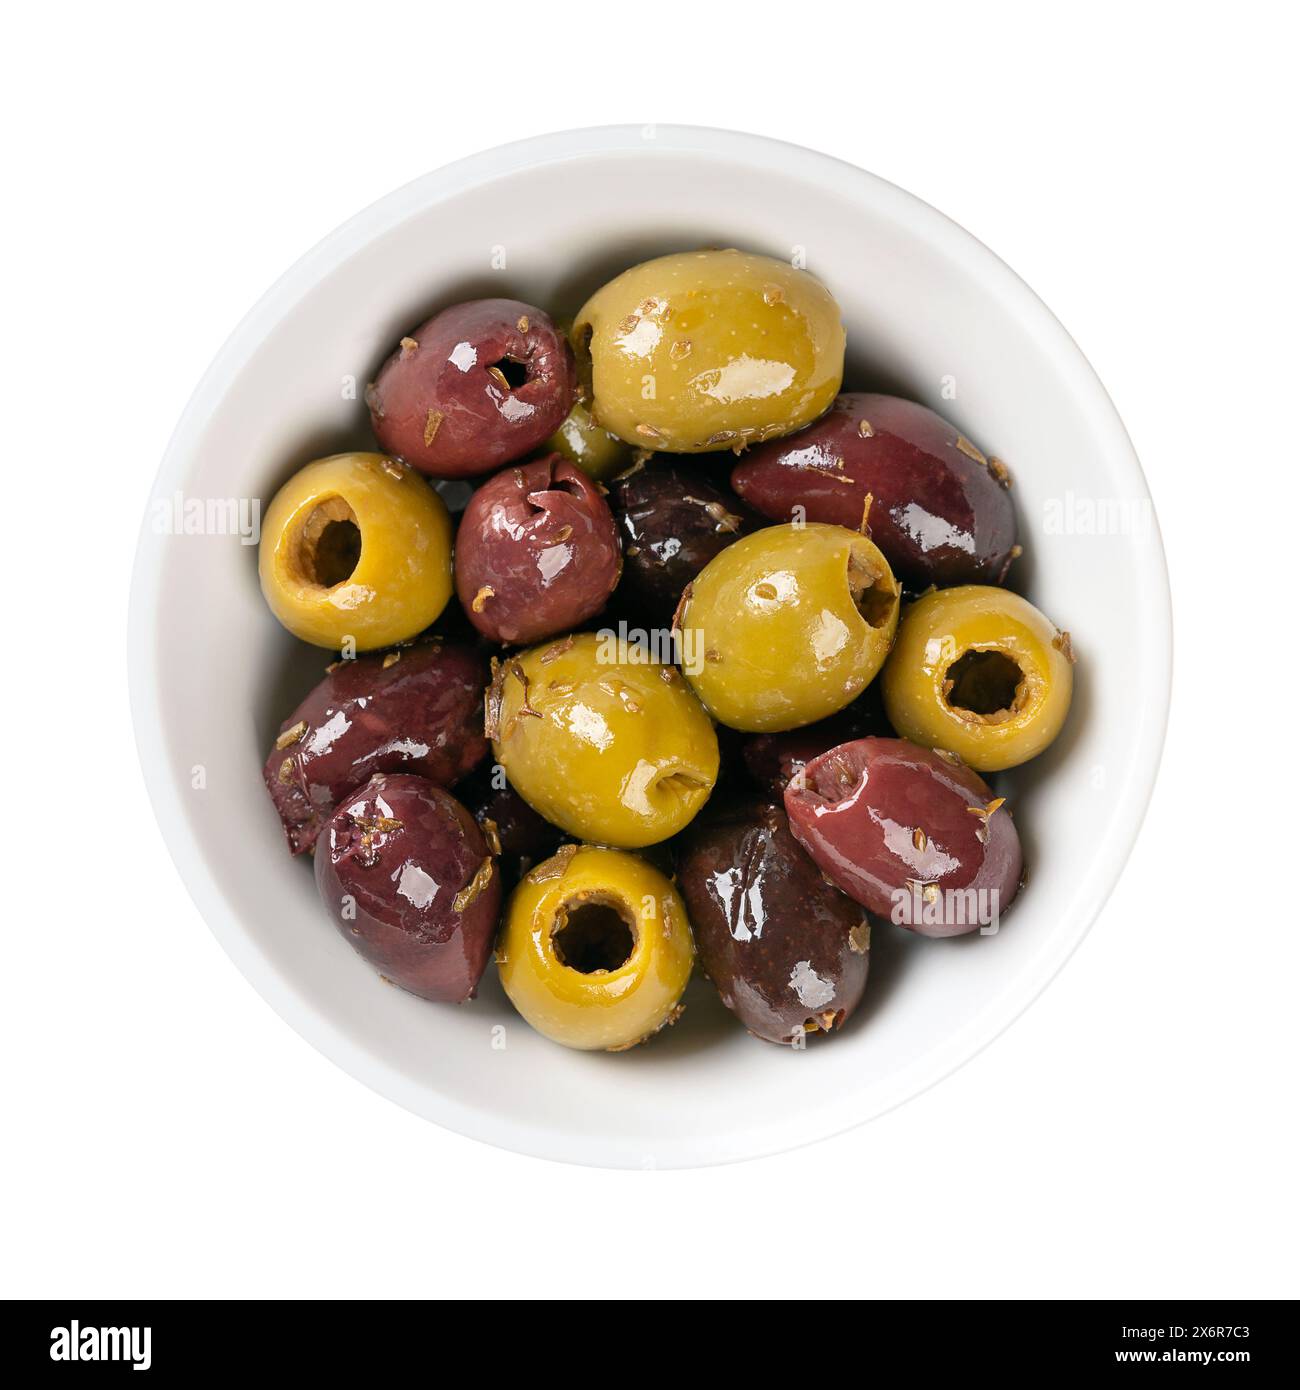 Kalamata dénoyautée et olives vertes, dans un bol blanc. Mélange d'olives grecques vertes et noires biologiques avec des herbes, conservées dans de l'huile d'olive indigène. Banque D'Images